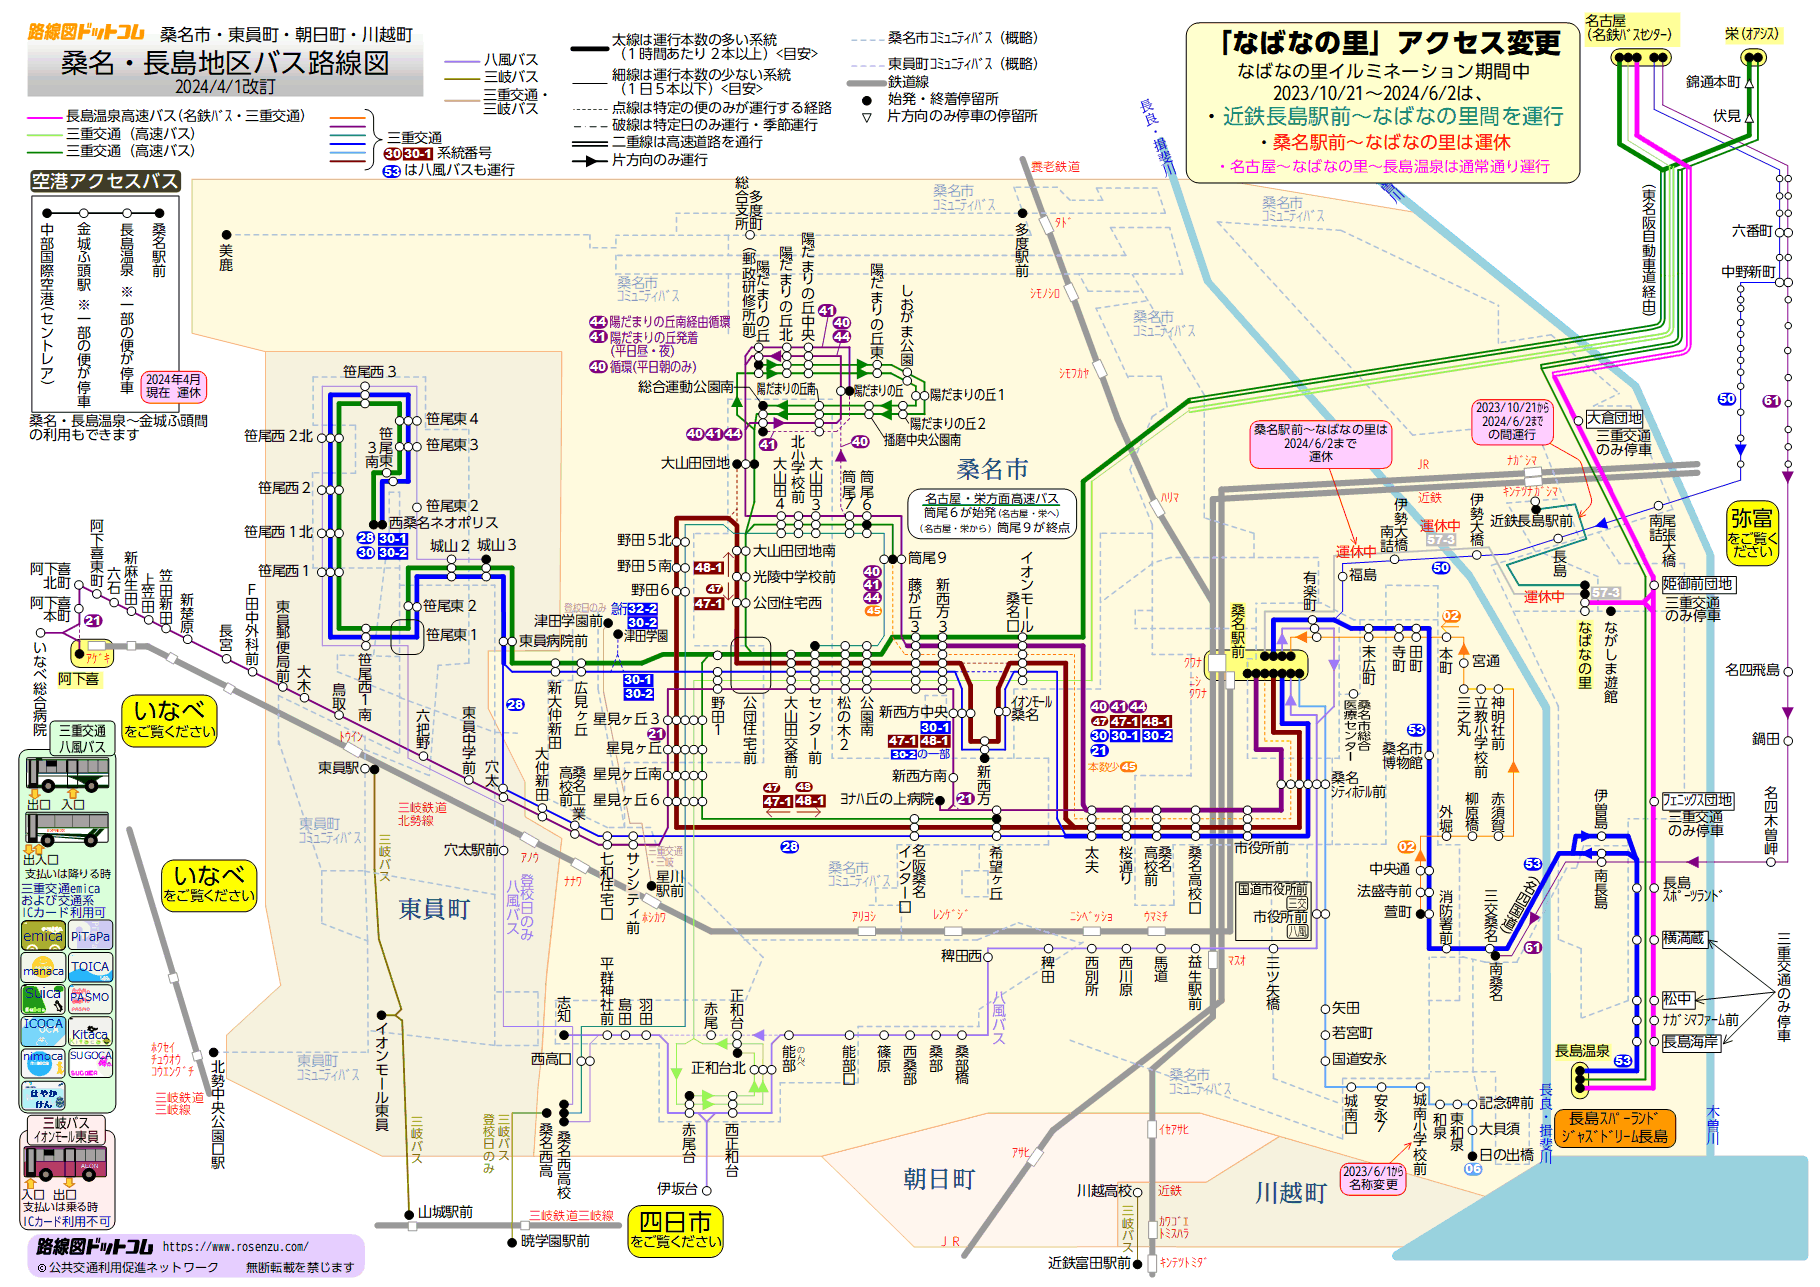 路線図ドットコム 三重県 桑名 長島地区バス路線図